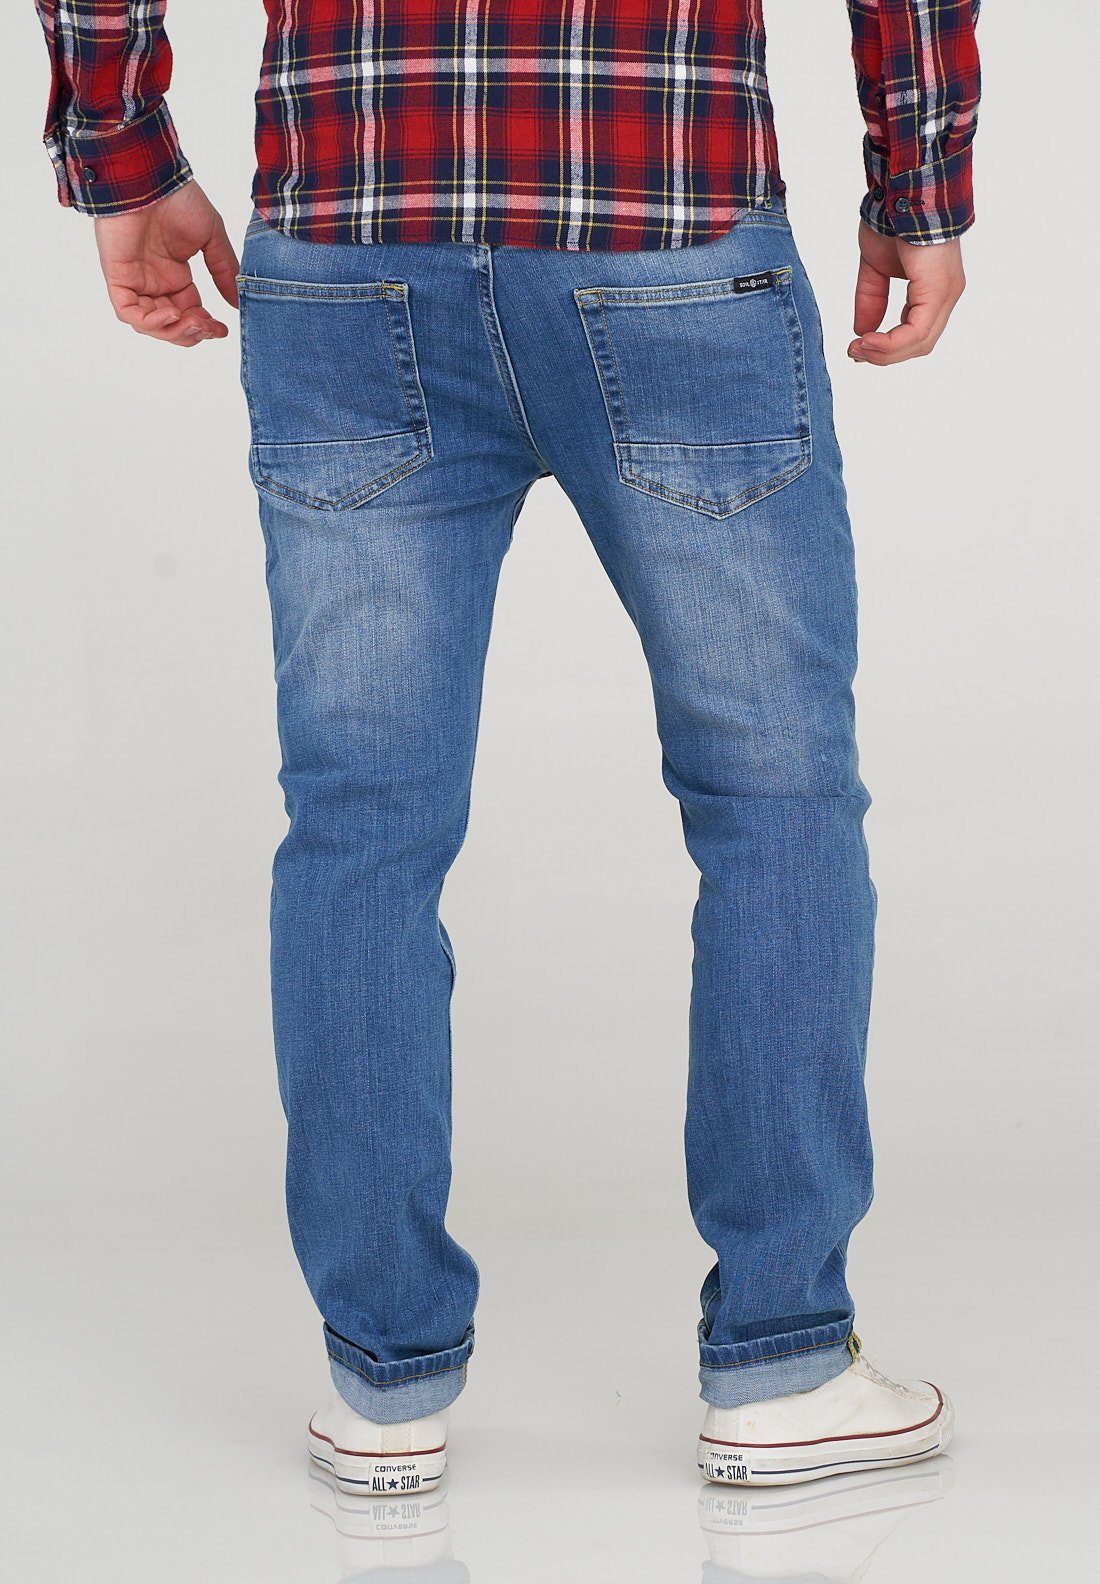 MADRID im SOULSTAR Regular-fit-Jeans hellblau Used-Wash-Stil